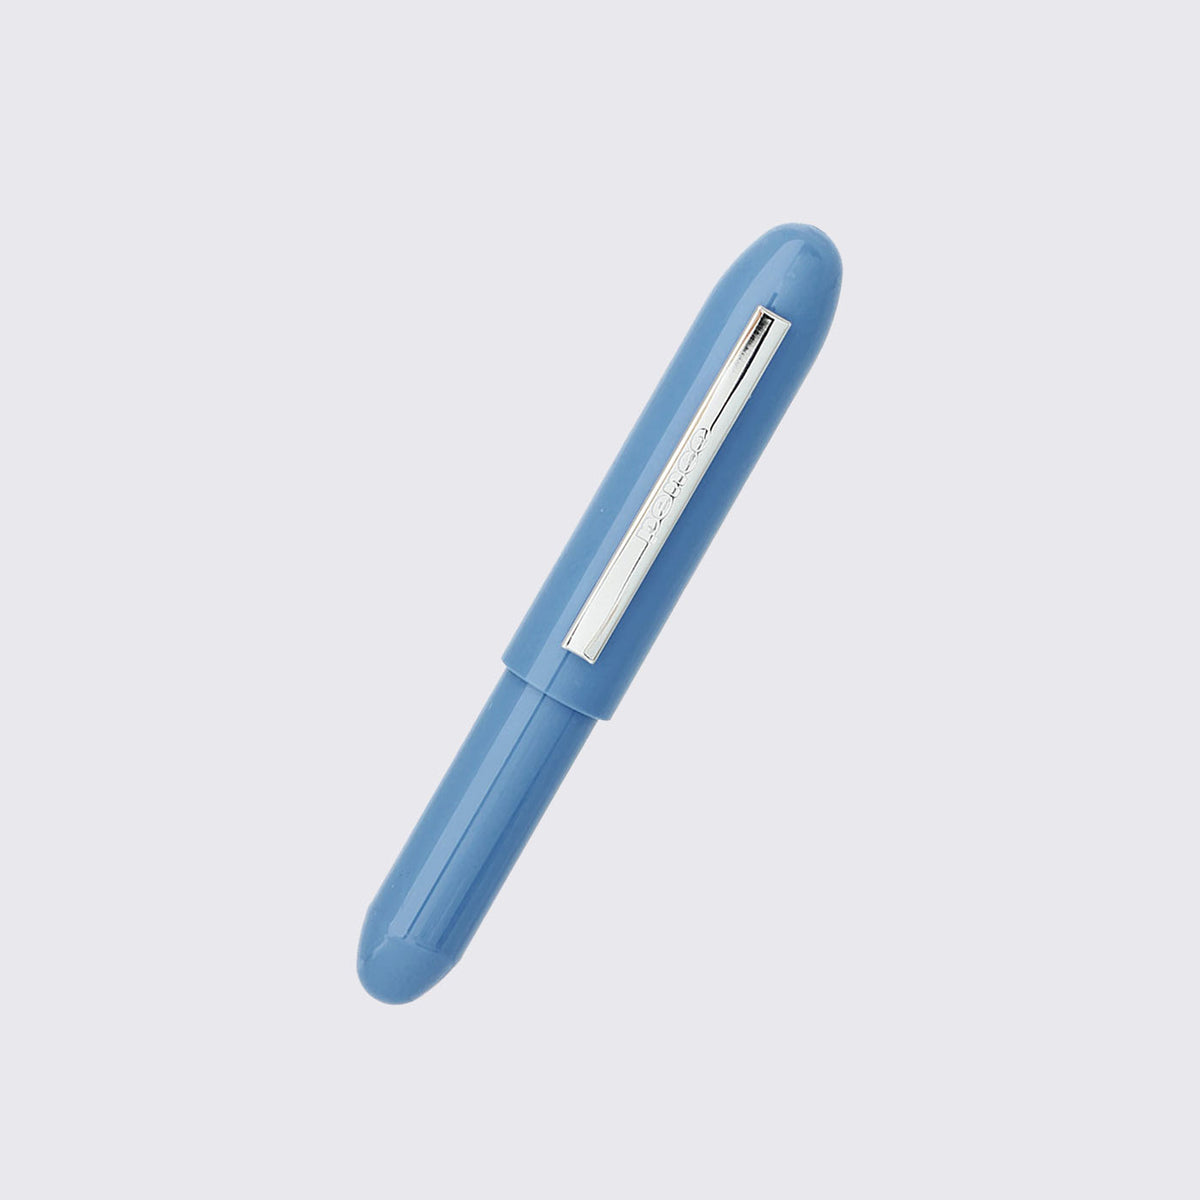 Penco / Bullet Ballpoint Pen Light blue